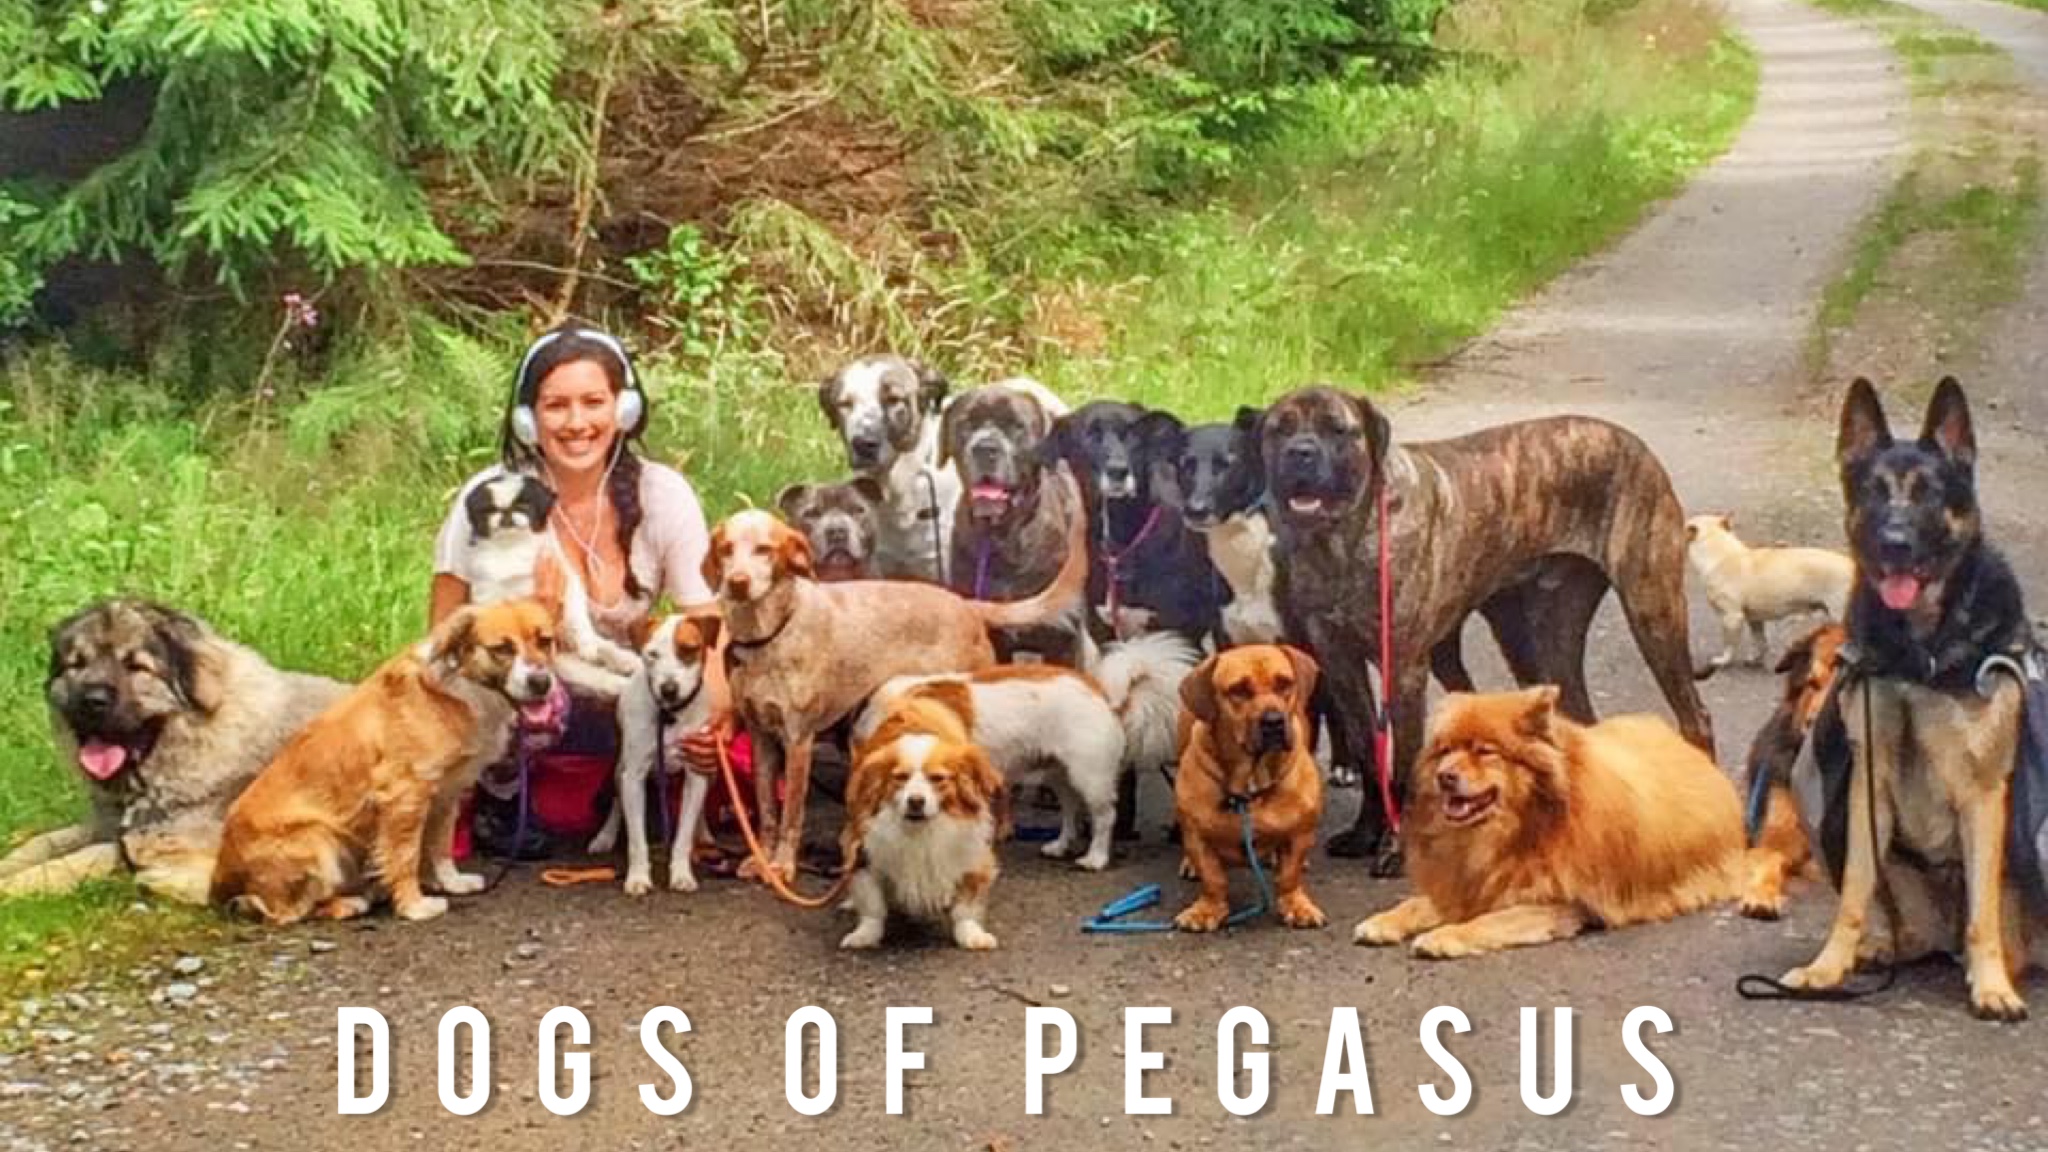 Dogs of Pegasus